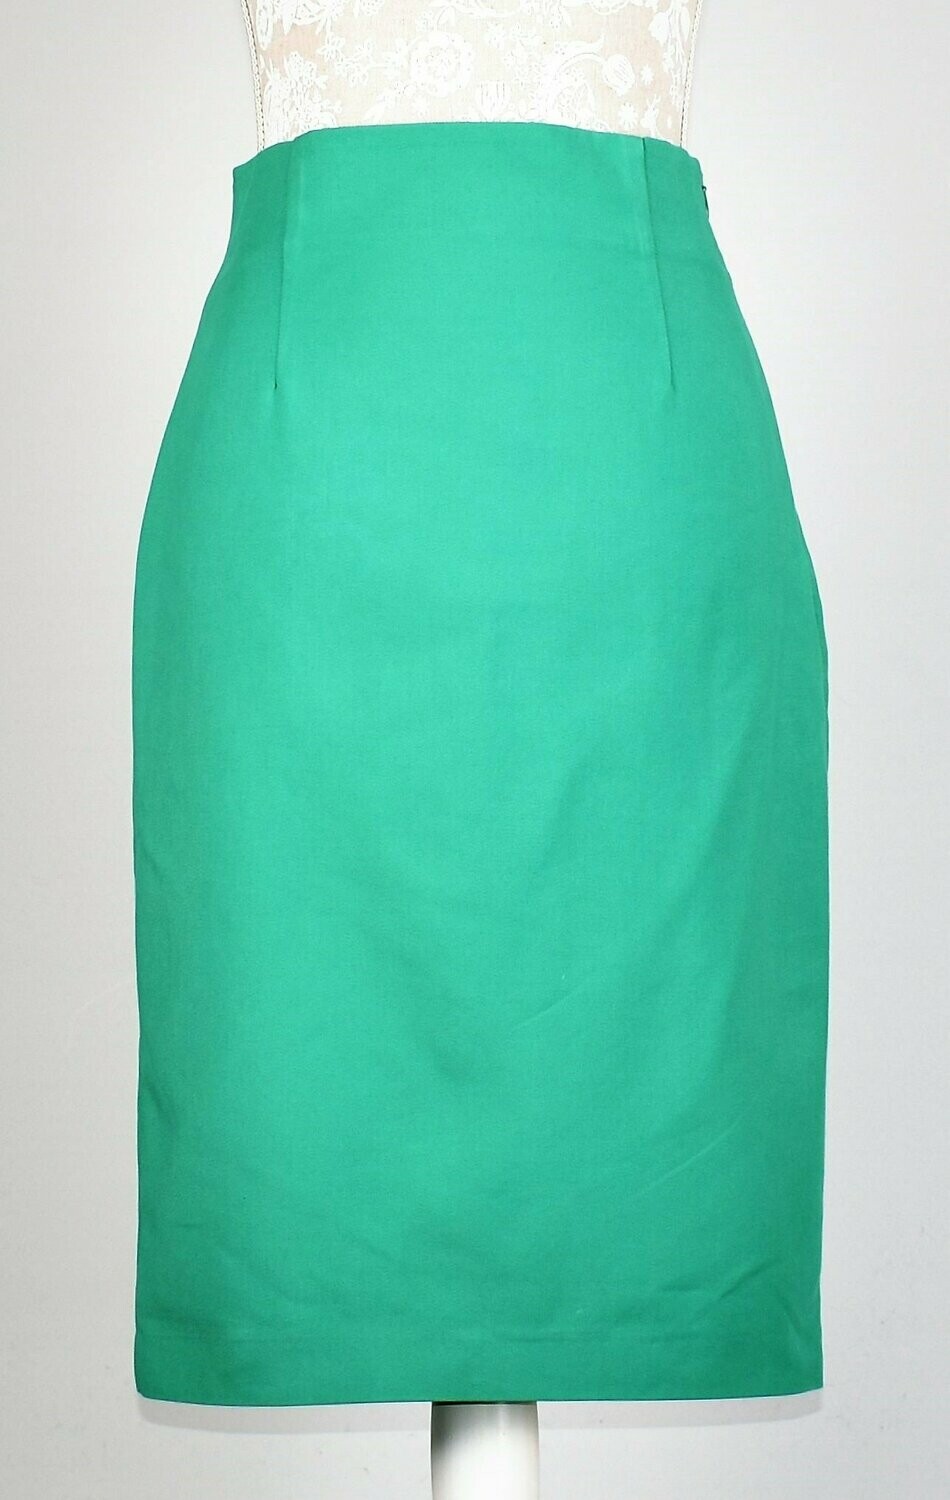 Leaf Green Pencil Skirt by Zara